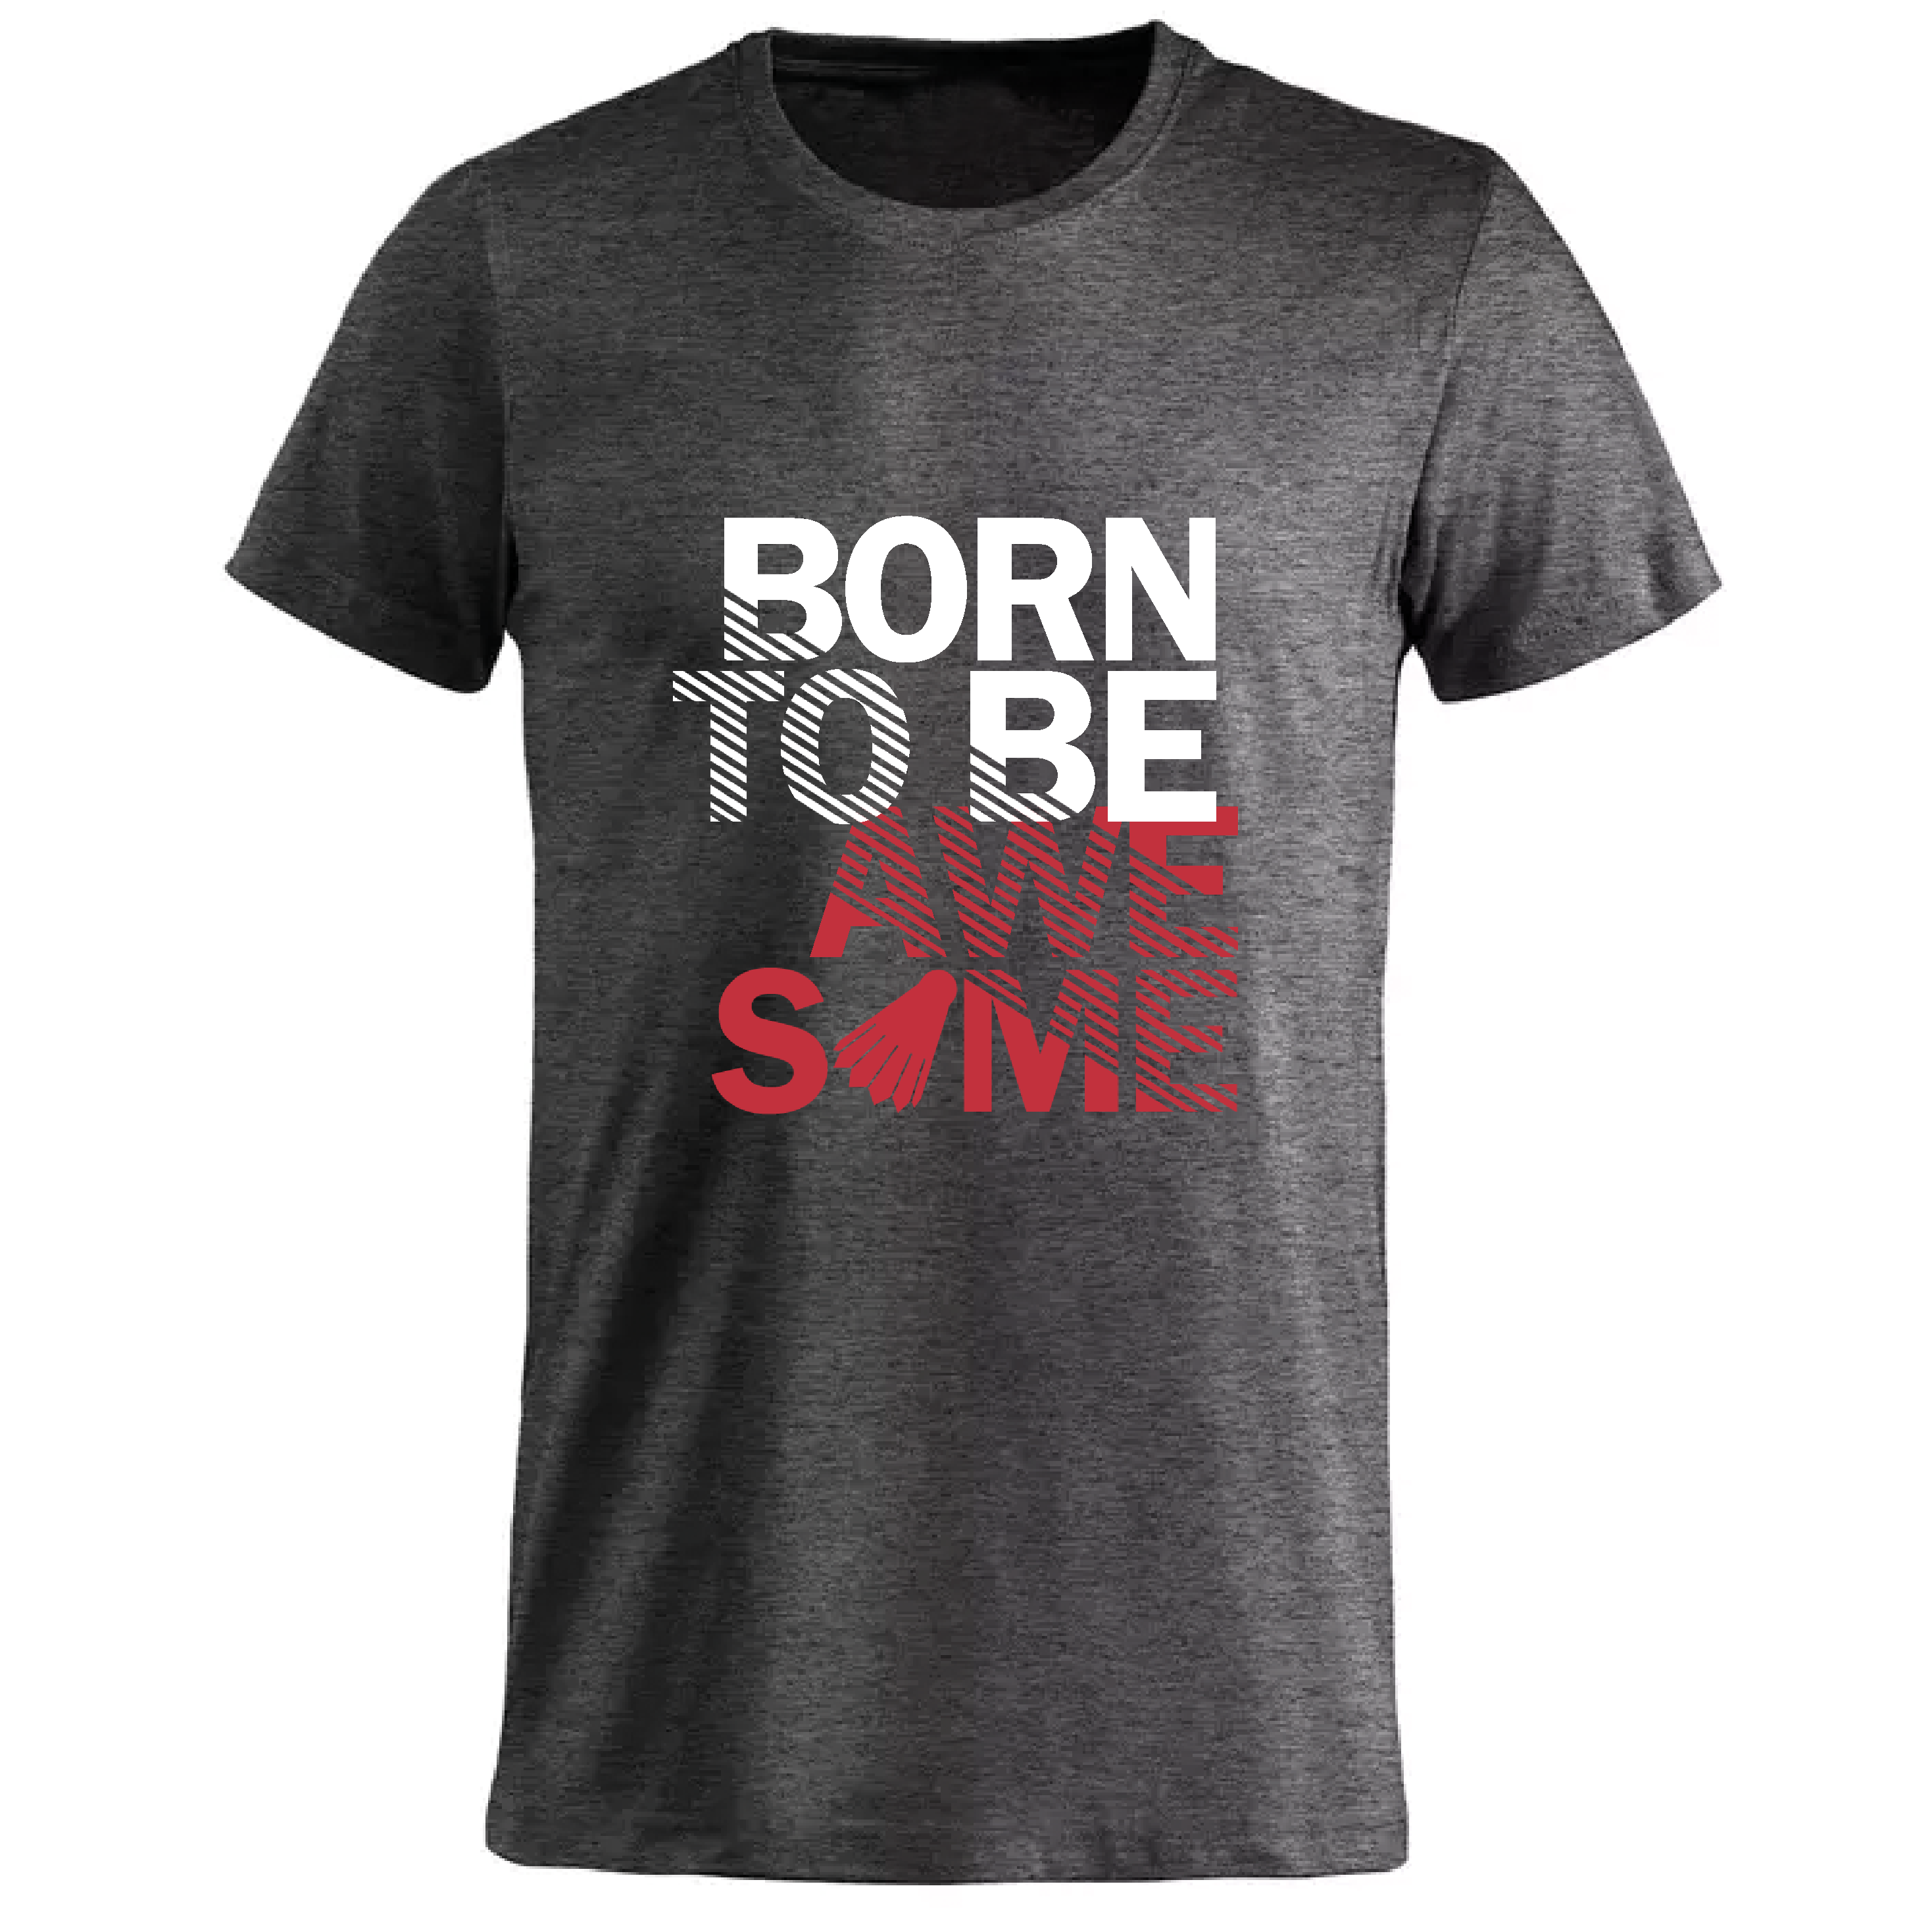 T-shirt med hvidt tryk “Born To Be | Webshop